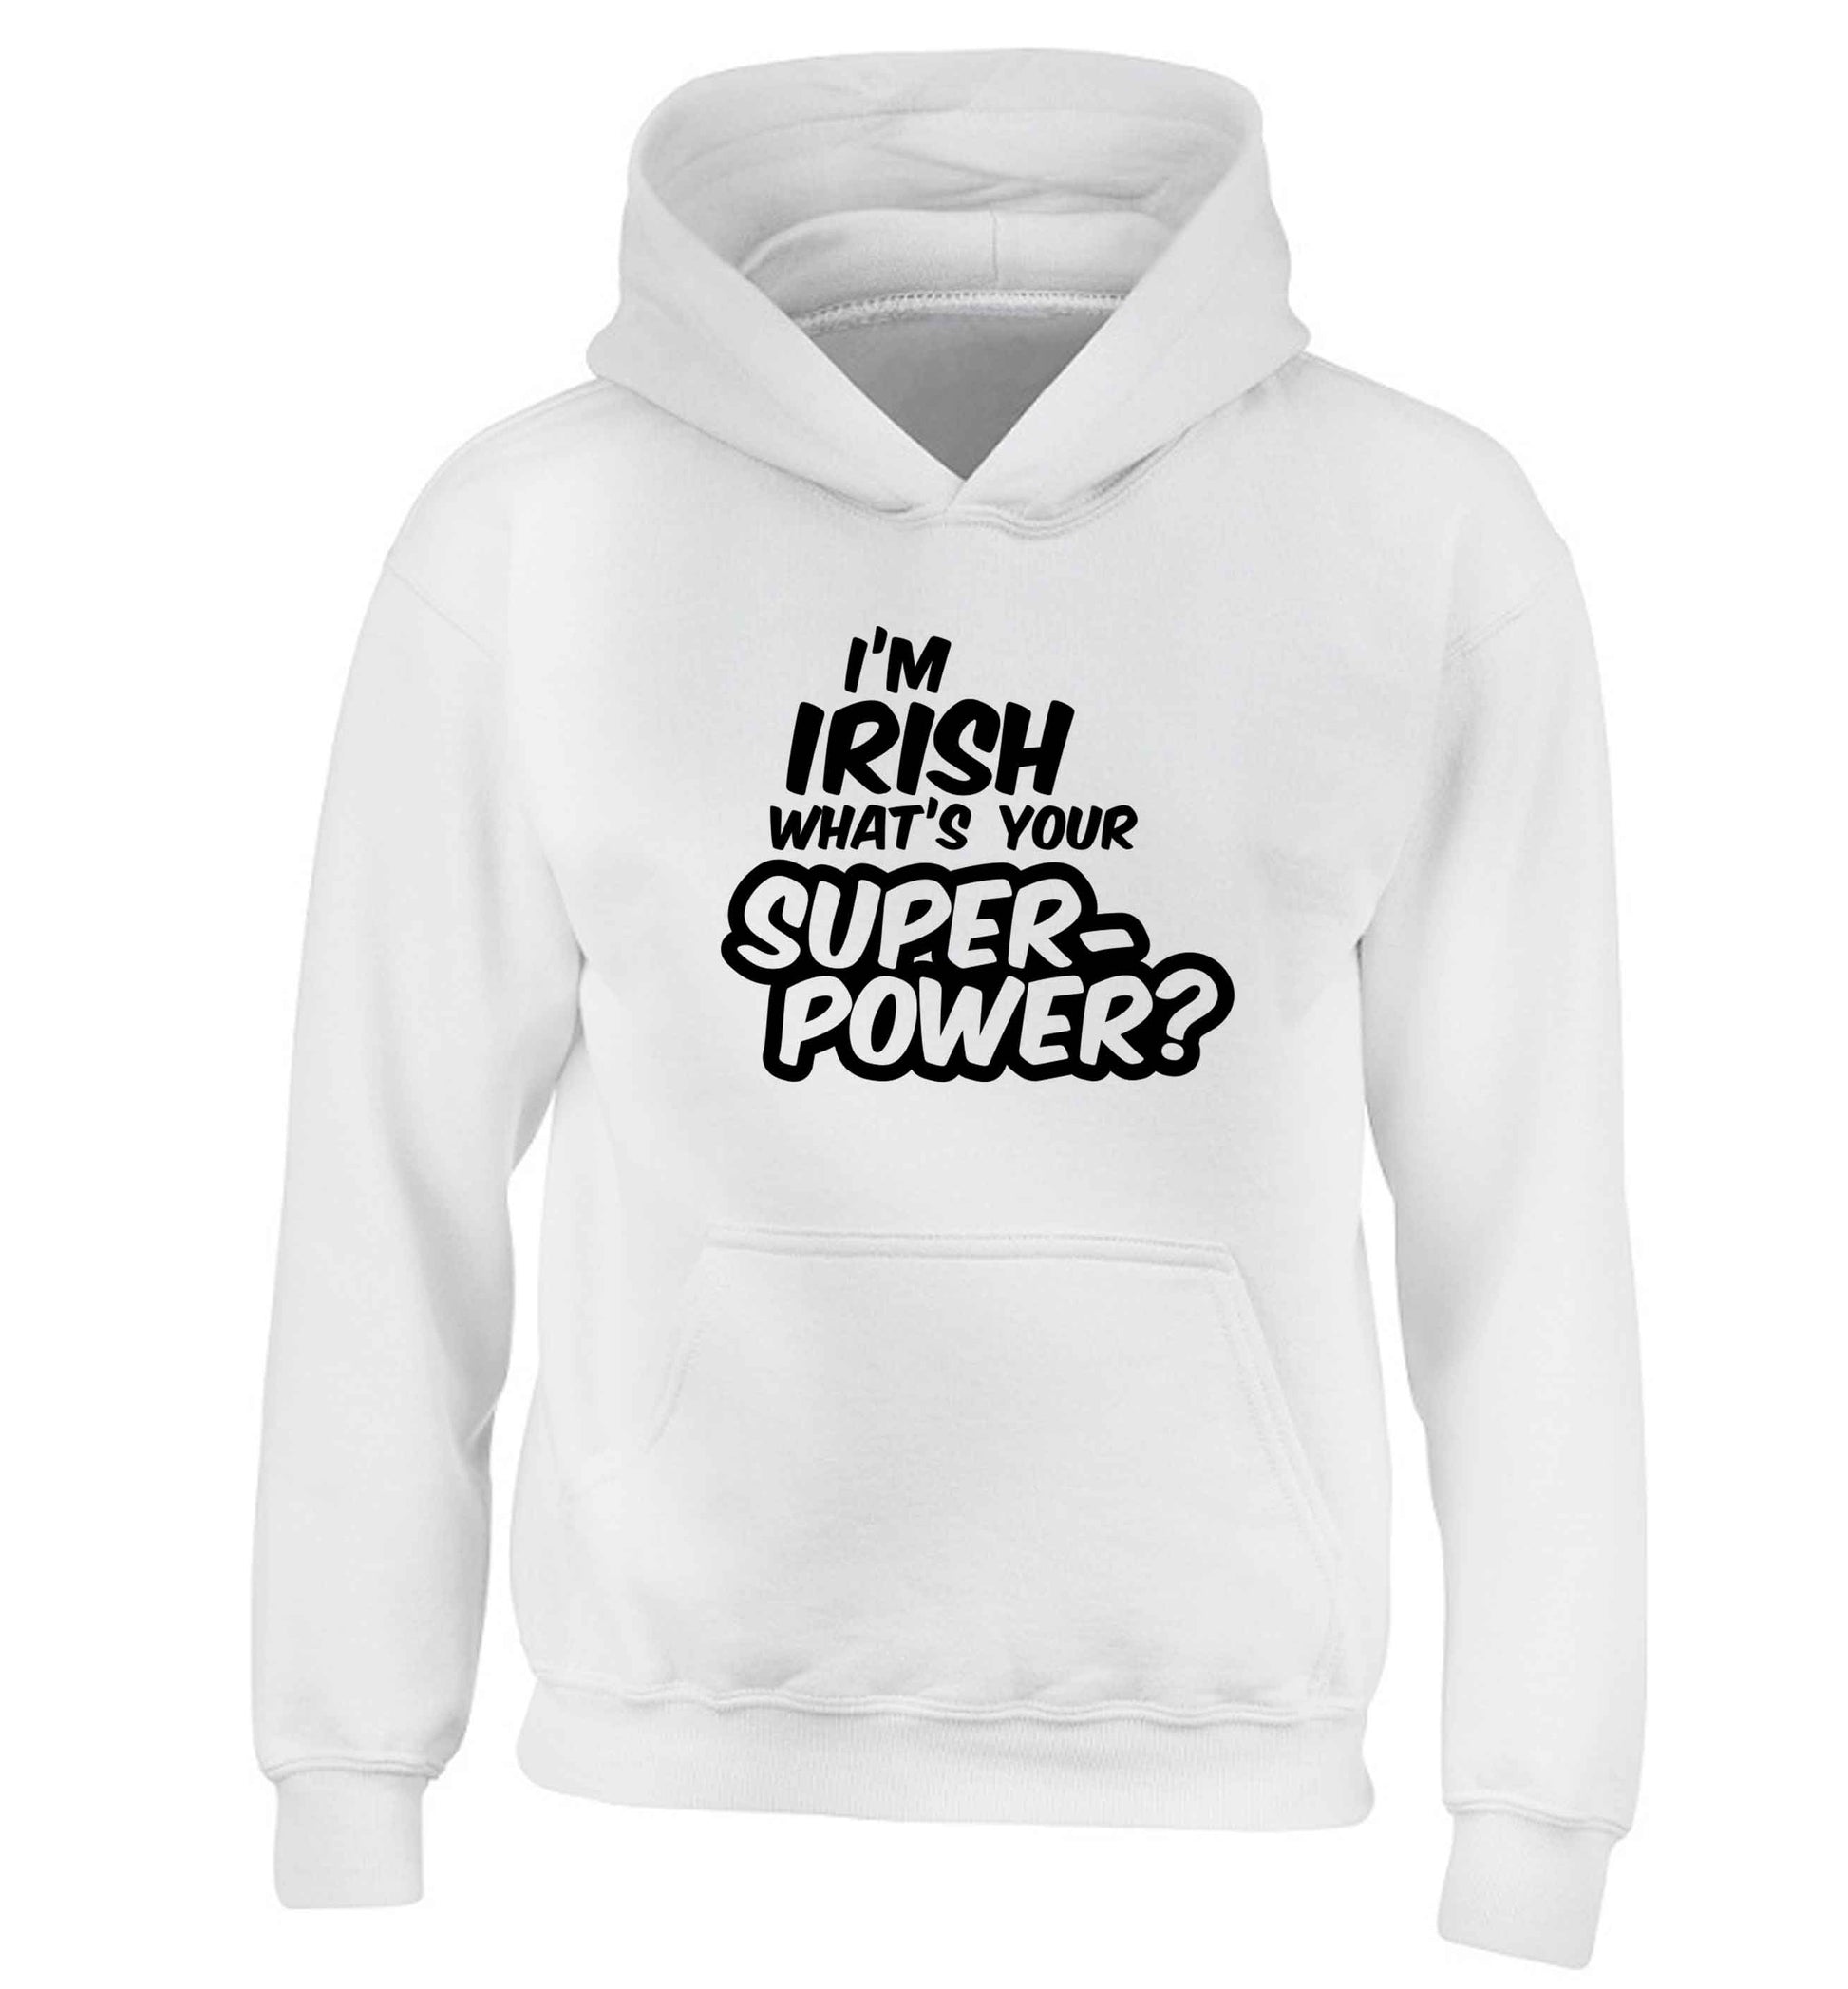 I'm Irish what's your superpower? children's white hoodie 12-13 Years